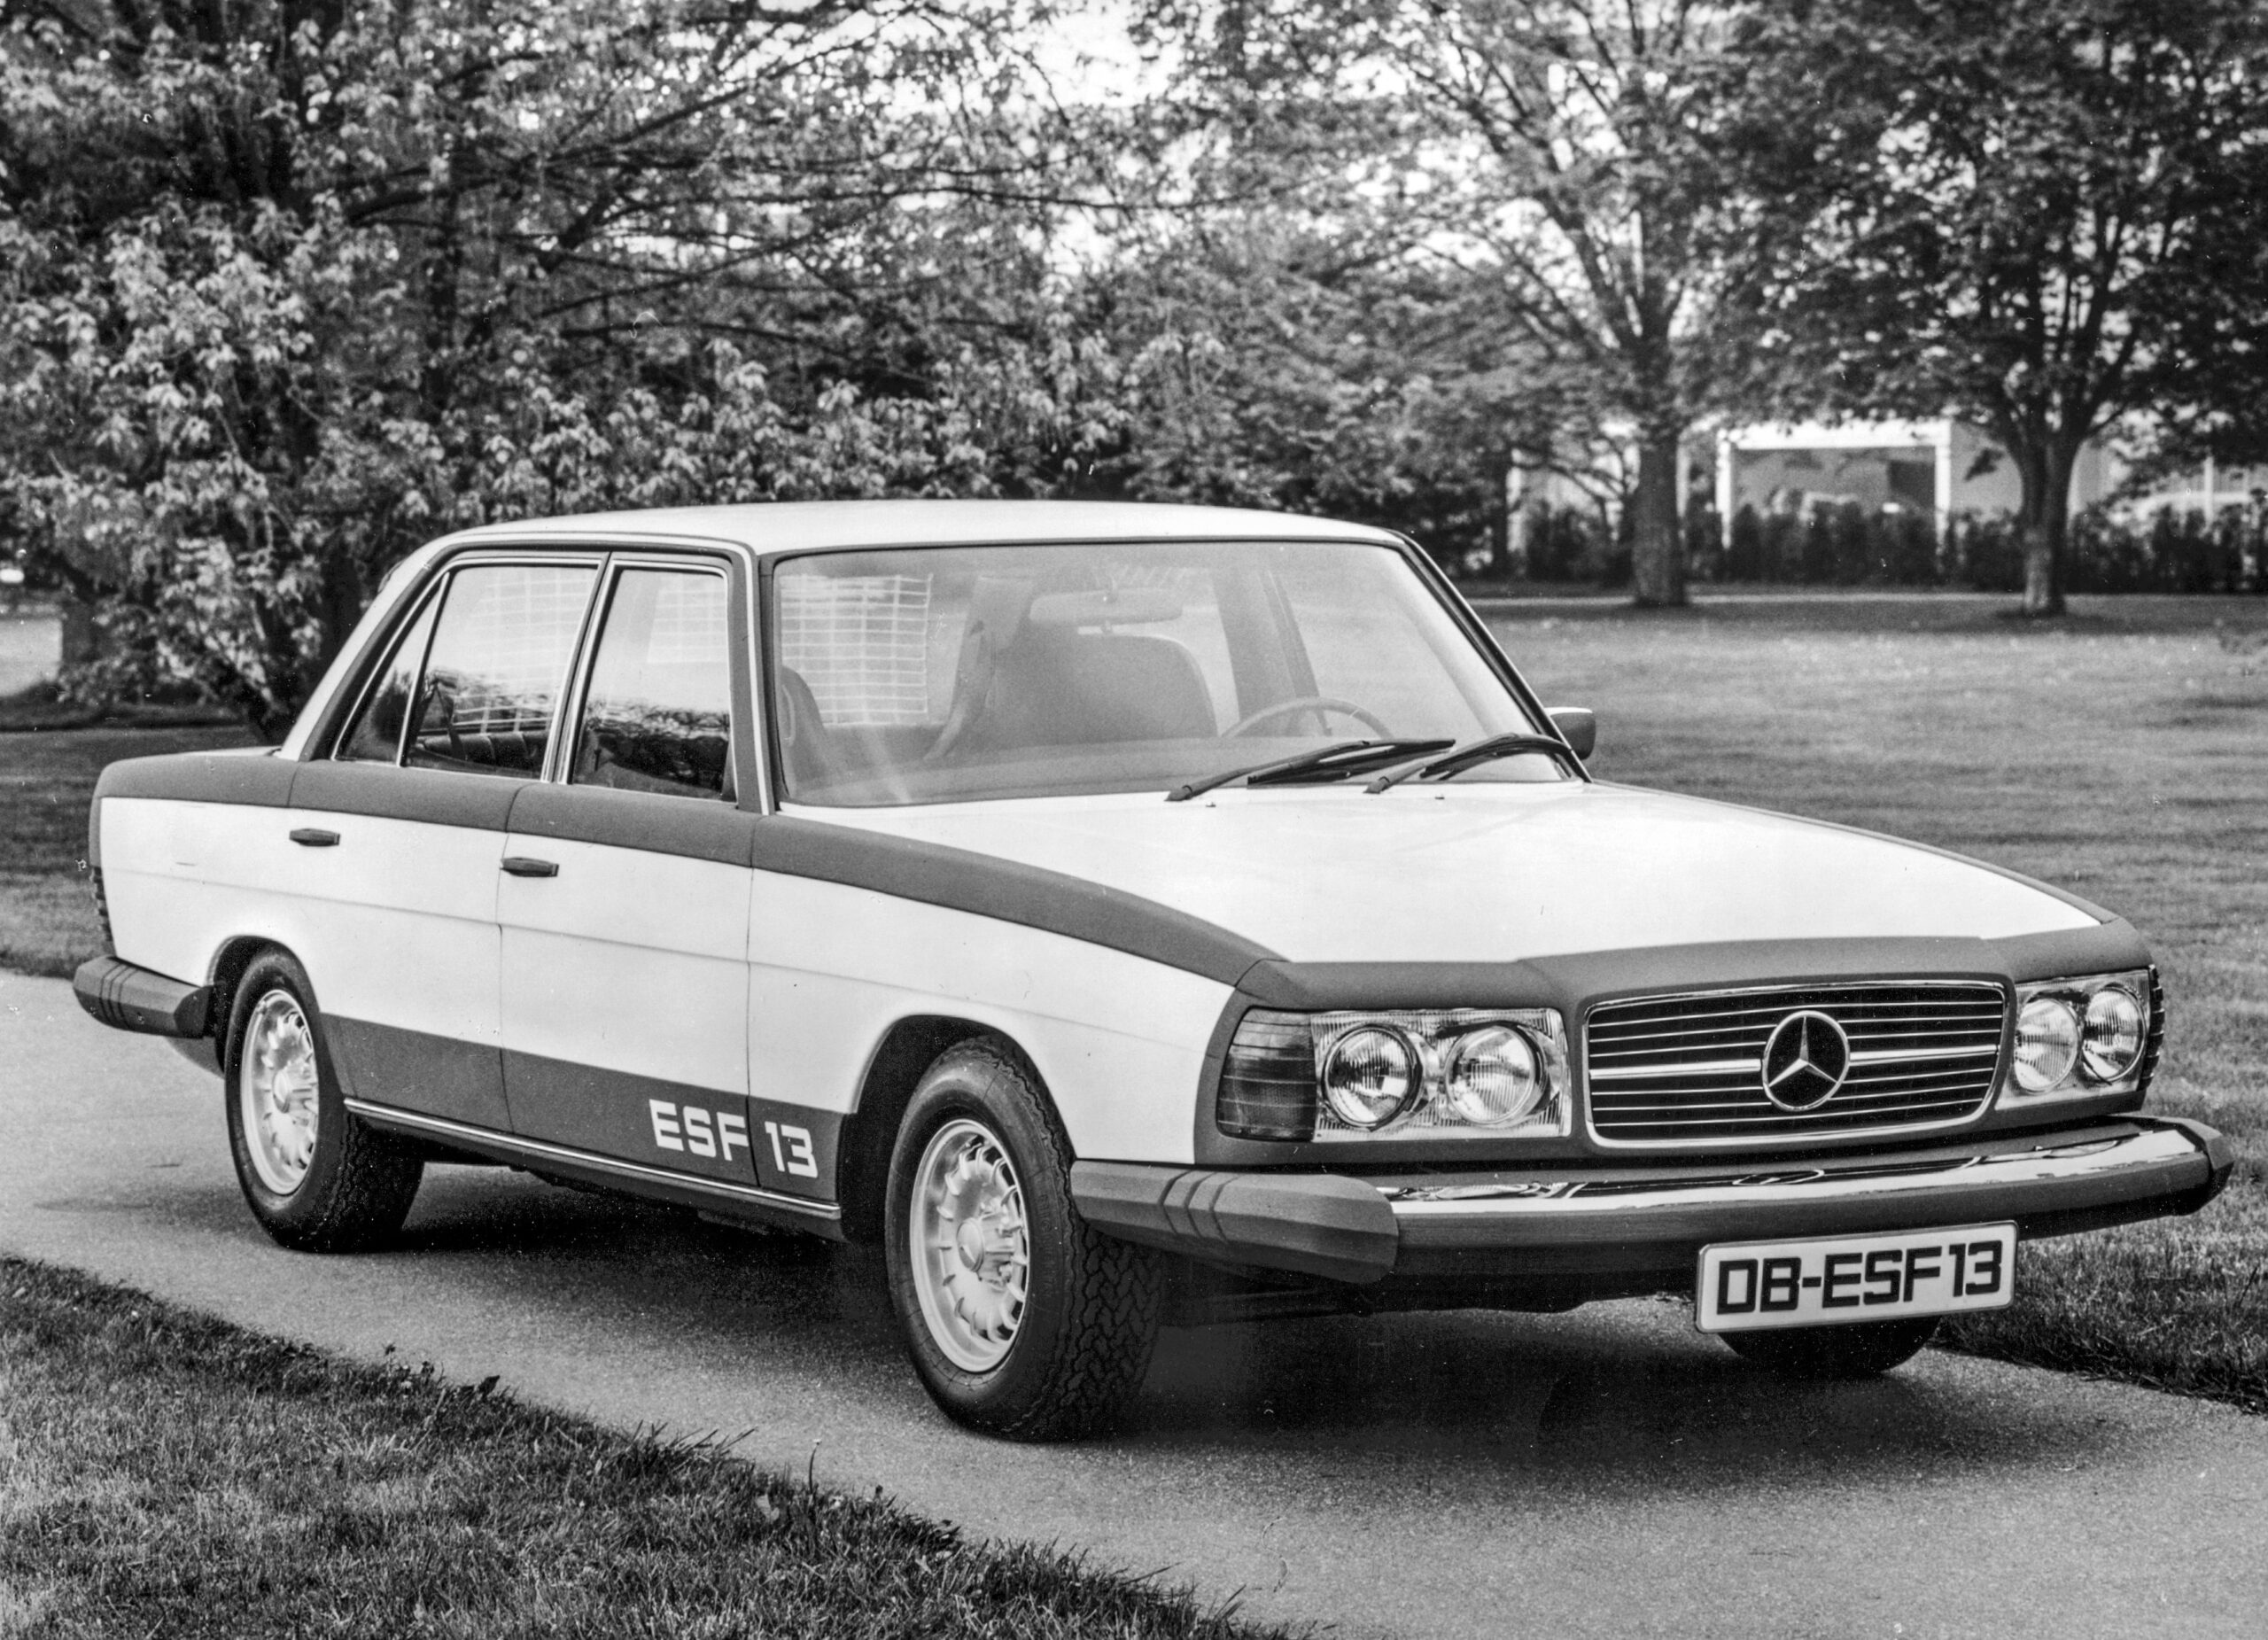 Vor-50-Jahren-Vorstellung-des-Mercedes-Benz-ESF-13